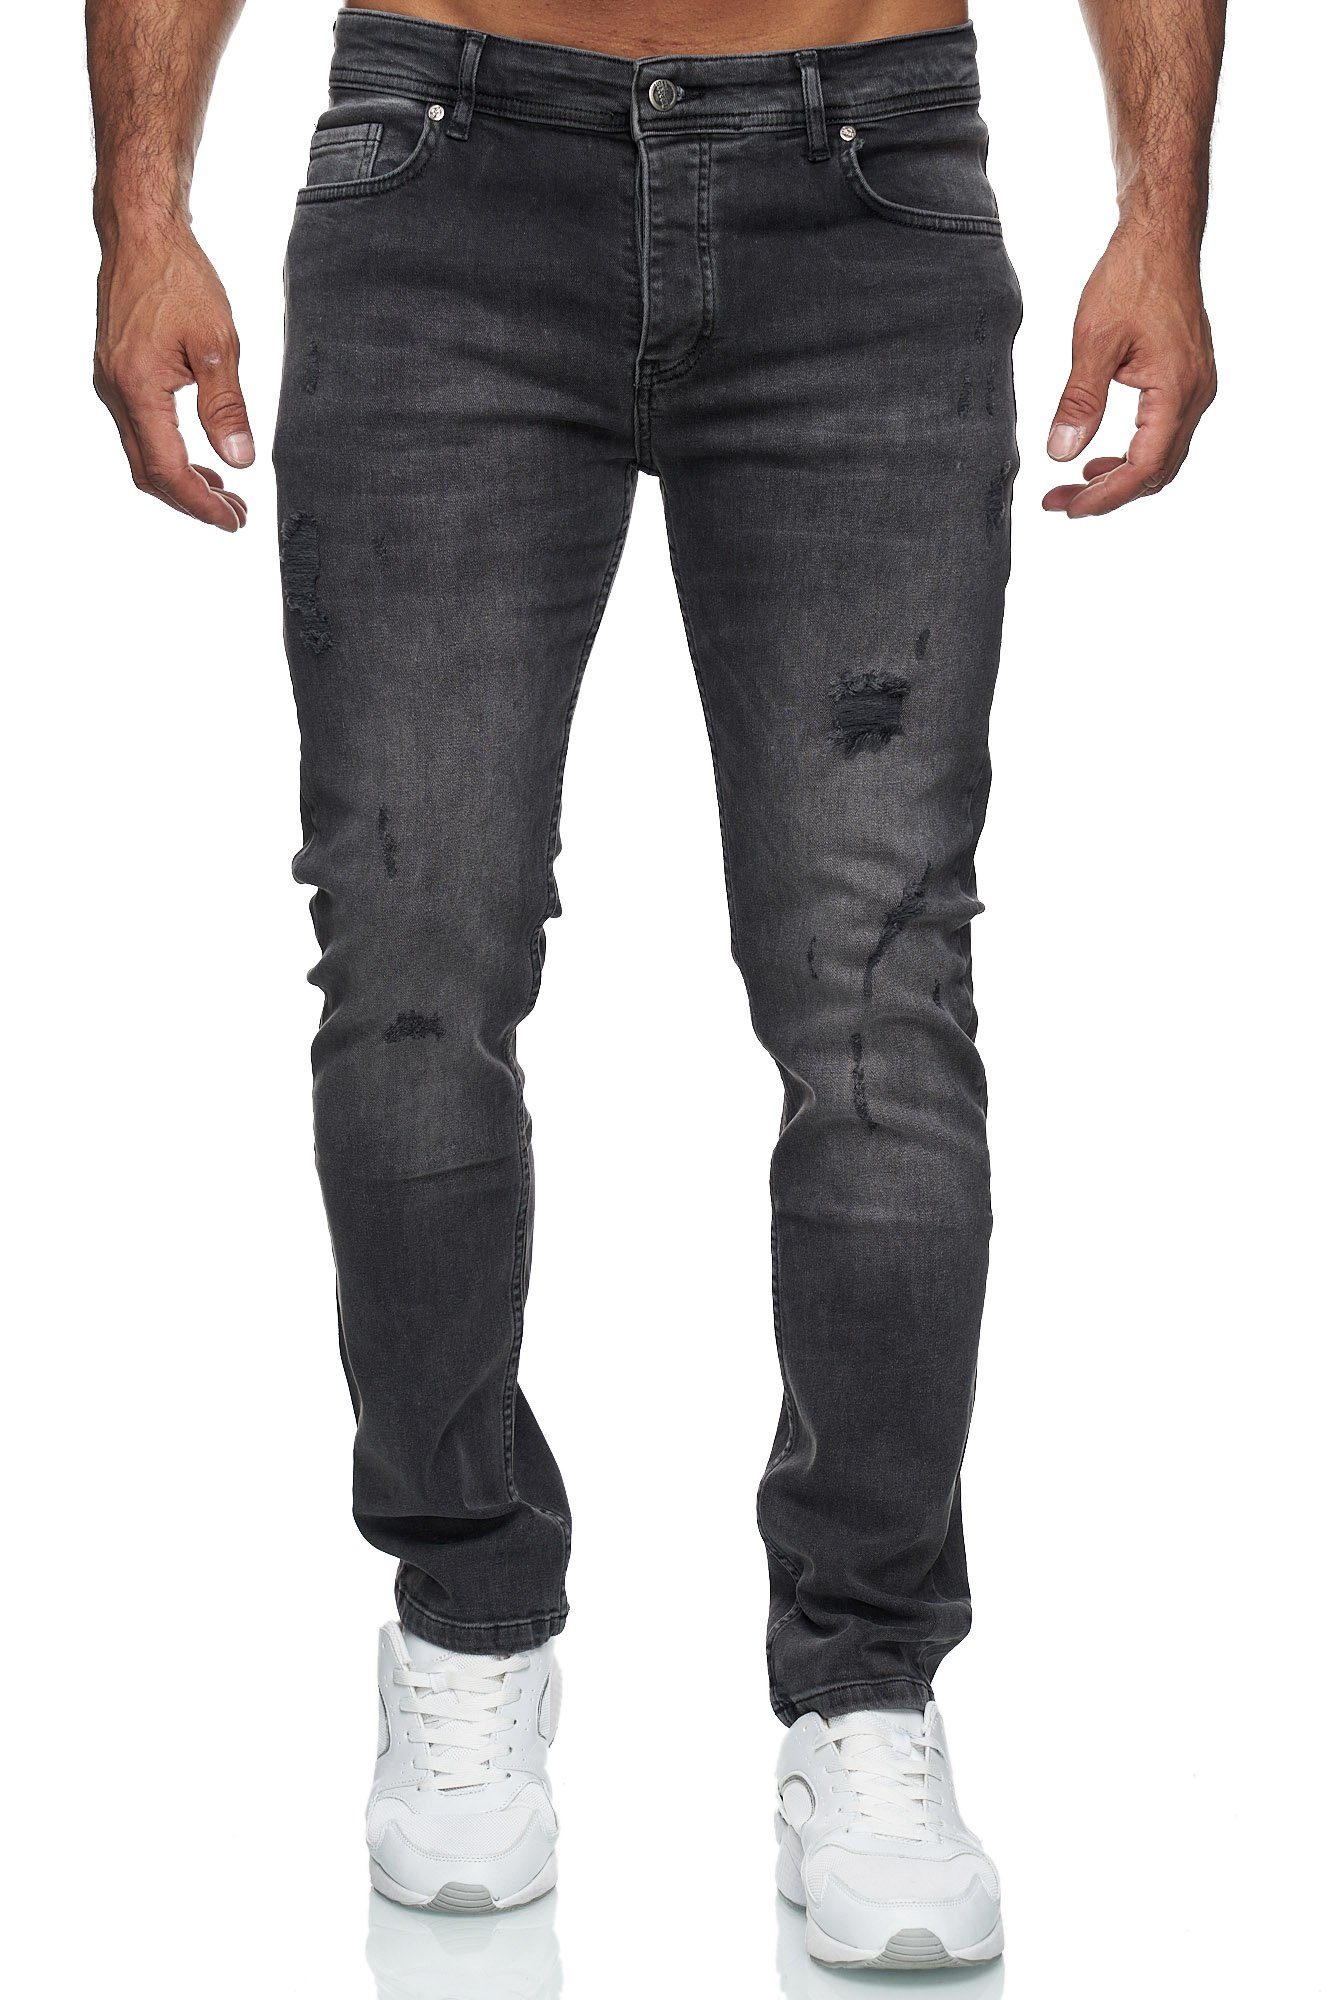 Jeanshose Destroyed Jeans Reslad Männer Destroyed Slim Stretch schwarz Destroyed-Jeans Fit Herren Herren-Hose Reslad Fit Jeans Look Slim